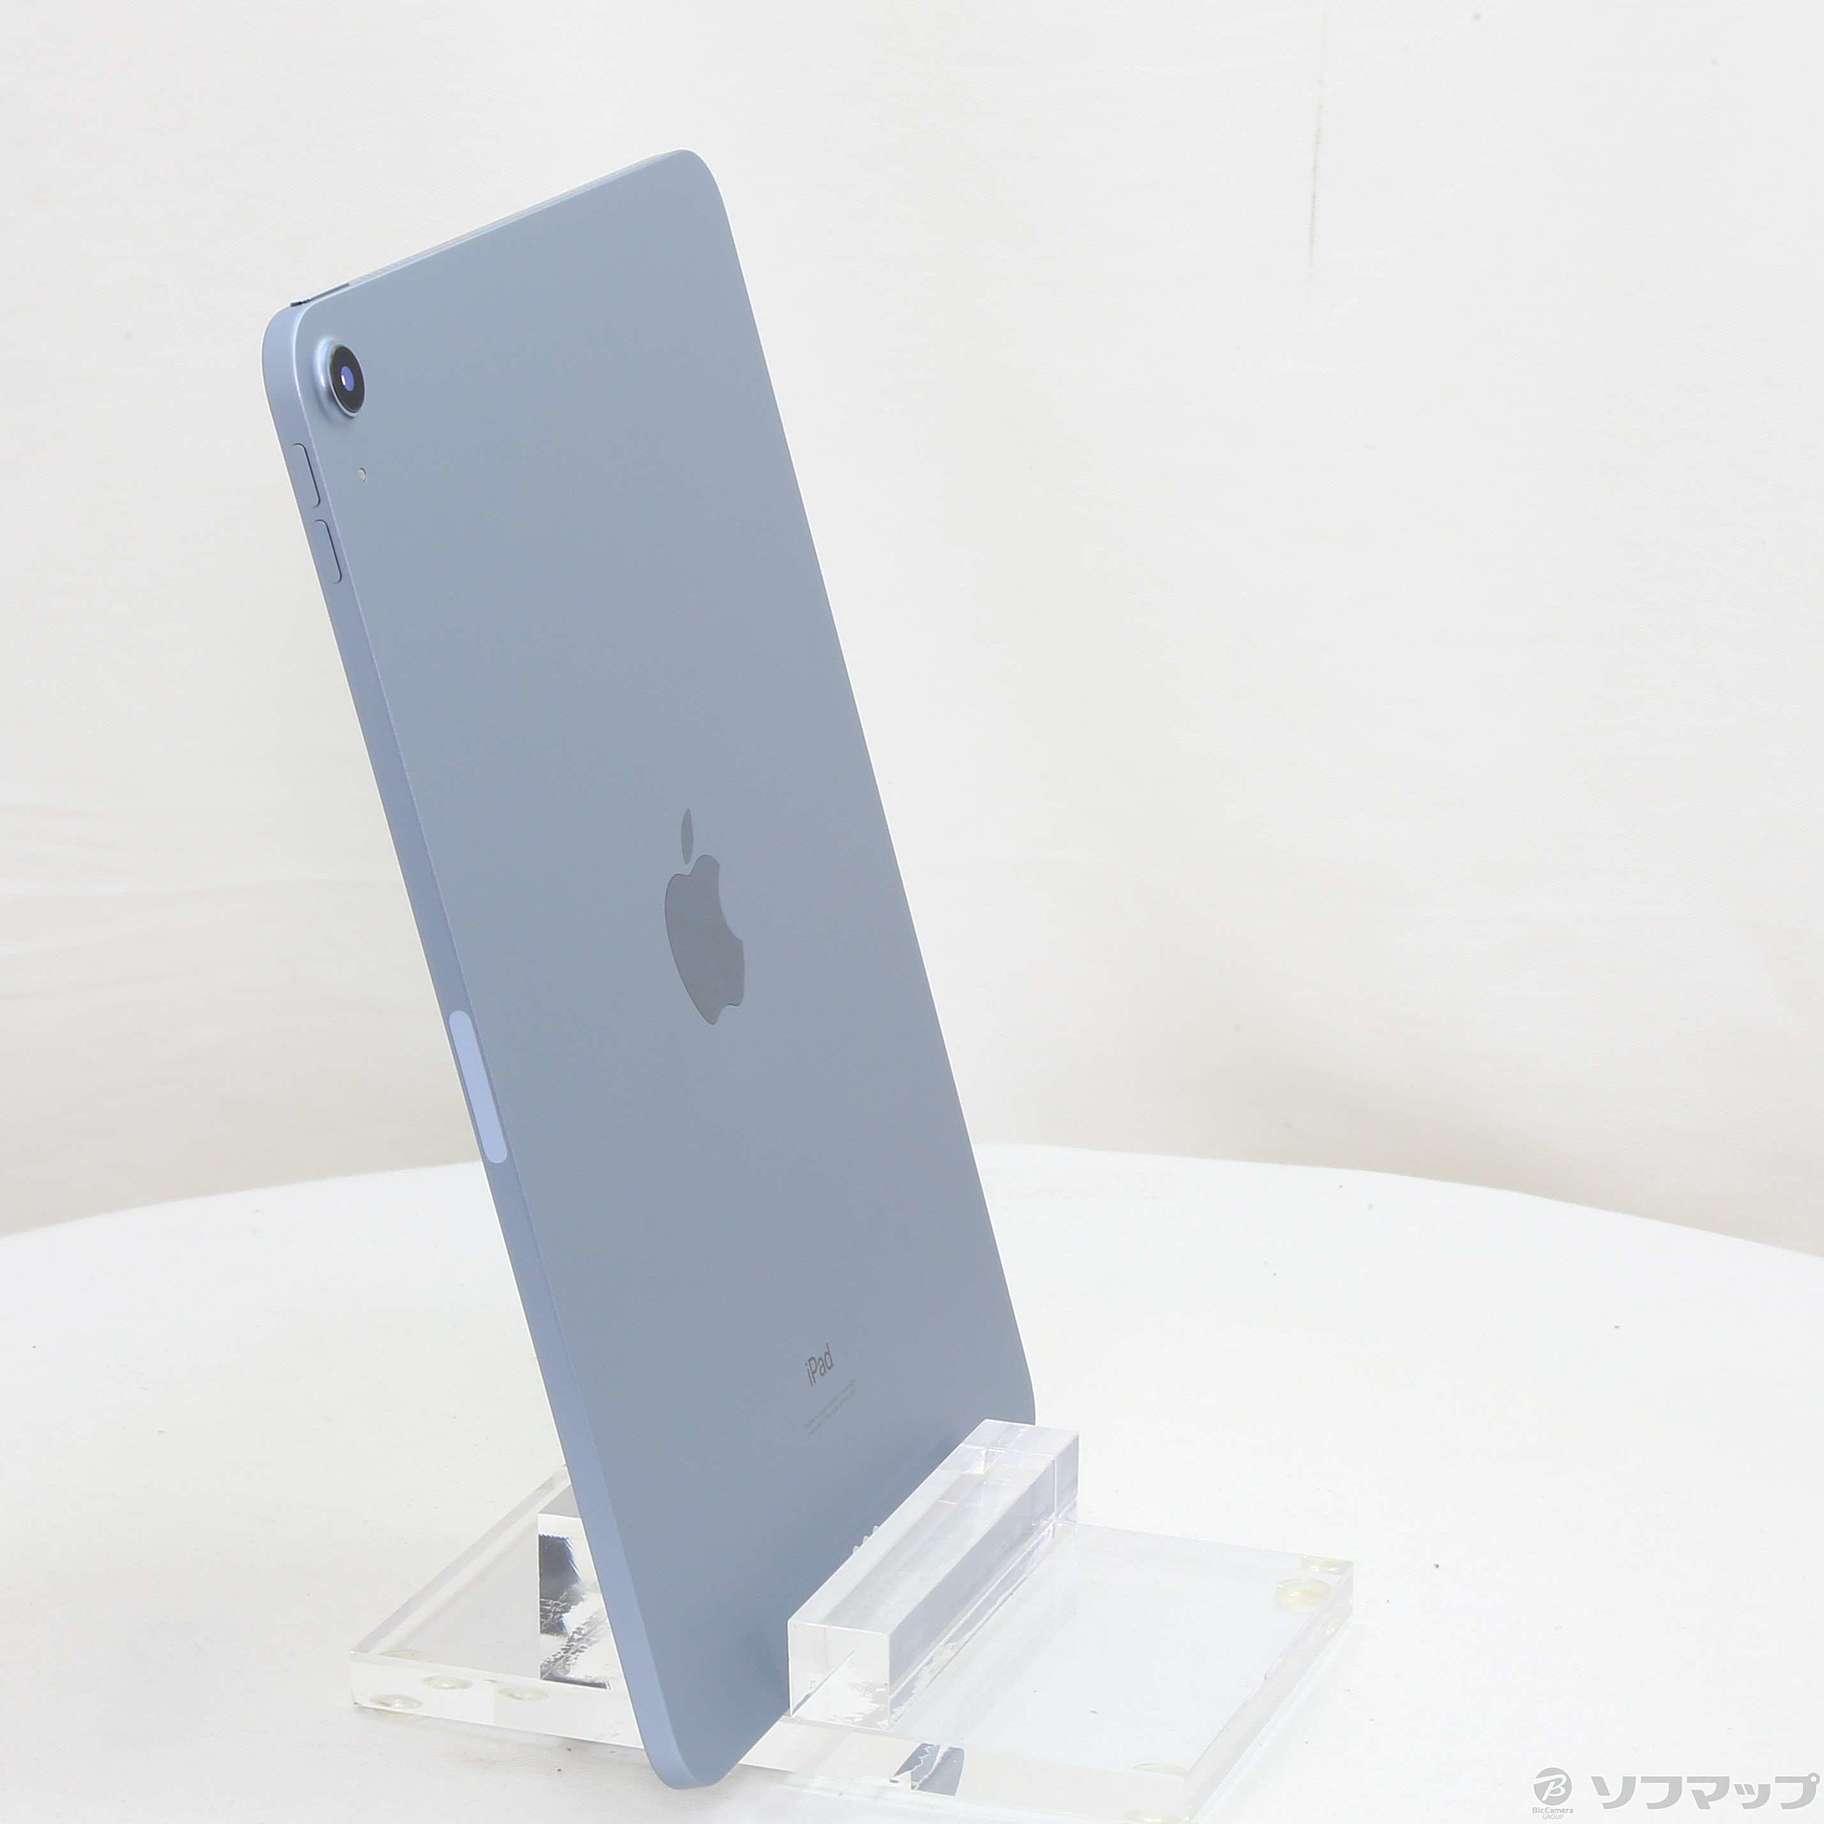 新品未開封 Apple iPad Air MYG02J/A 第4世代 256GB